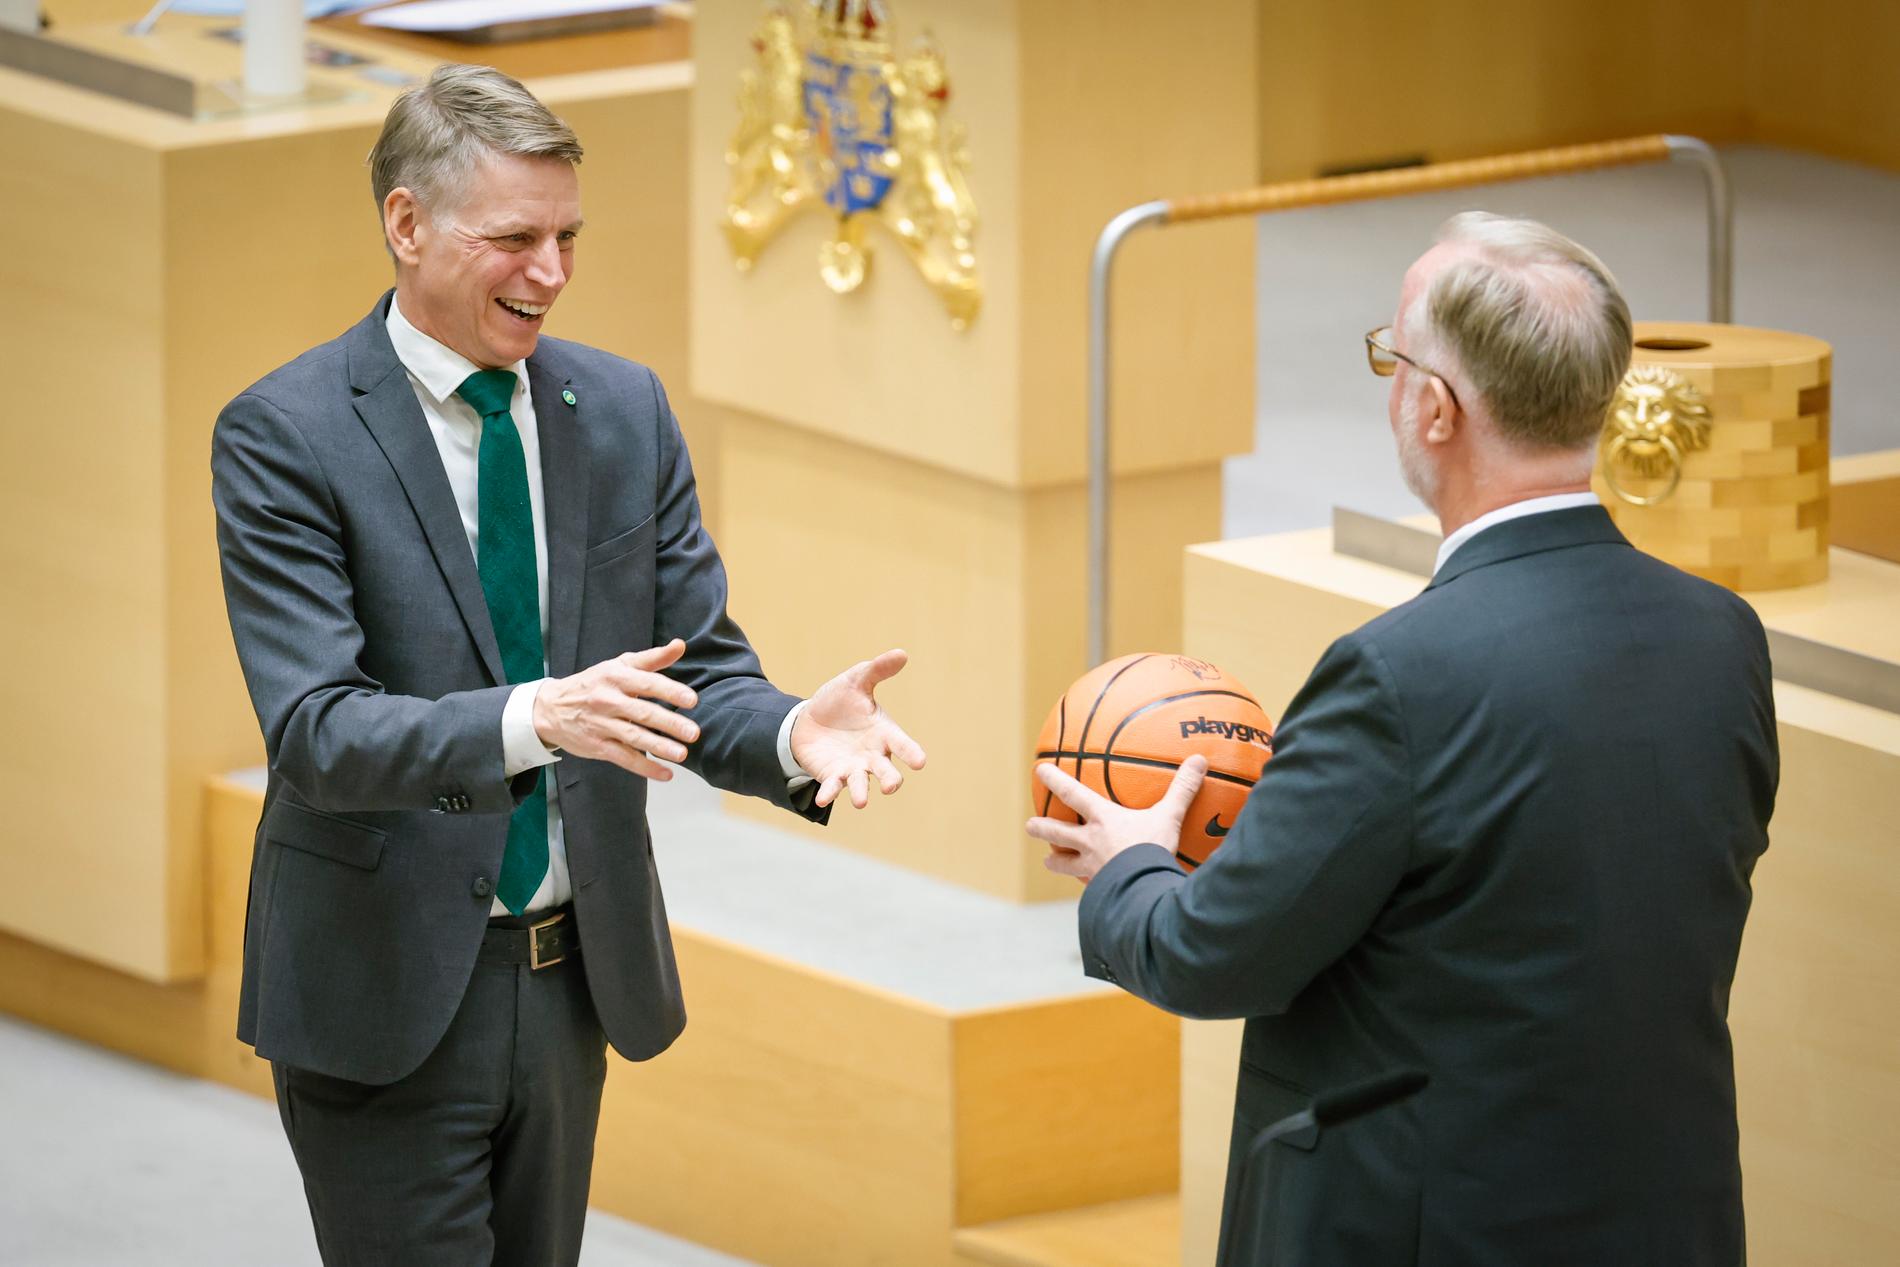 Miljöpartiets språkrör Per Bolund tackas av och får present (en basketboll) av Liberalernas partiledare Johan Pehrson.